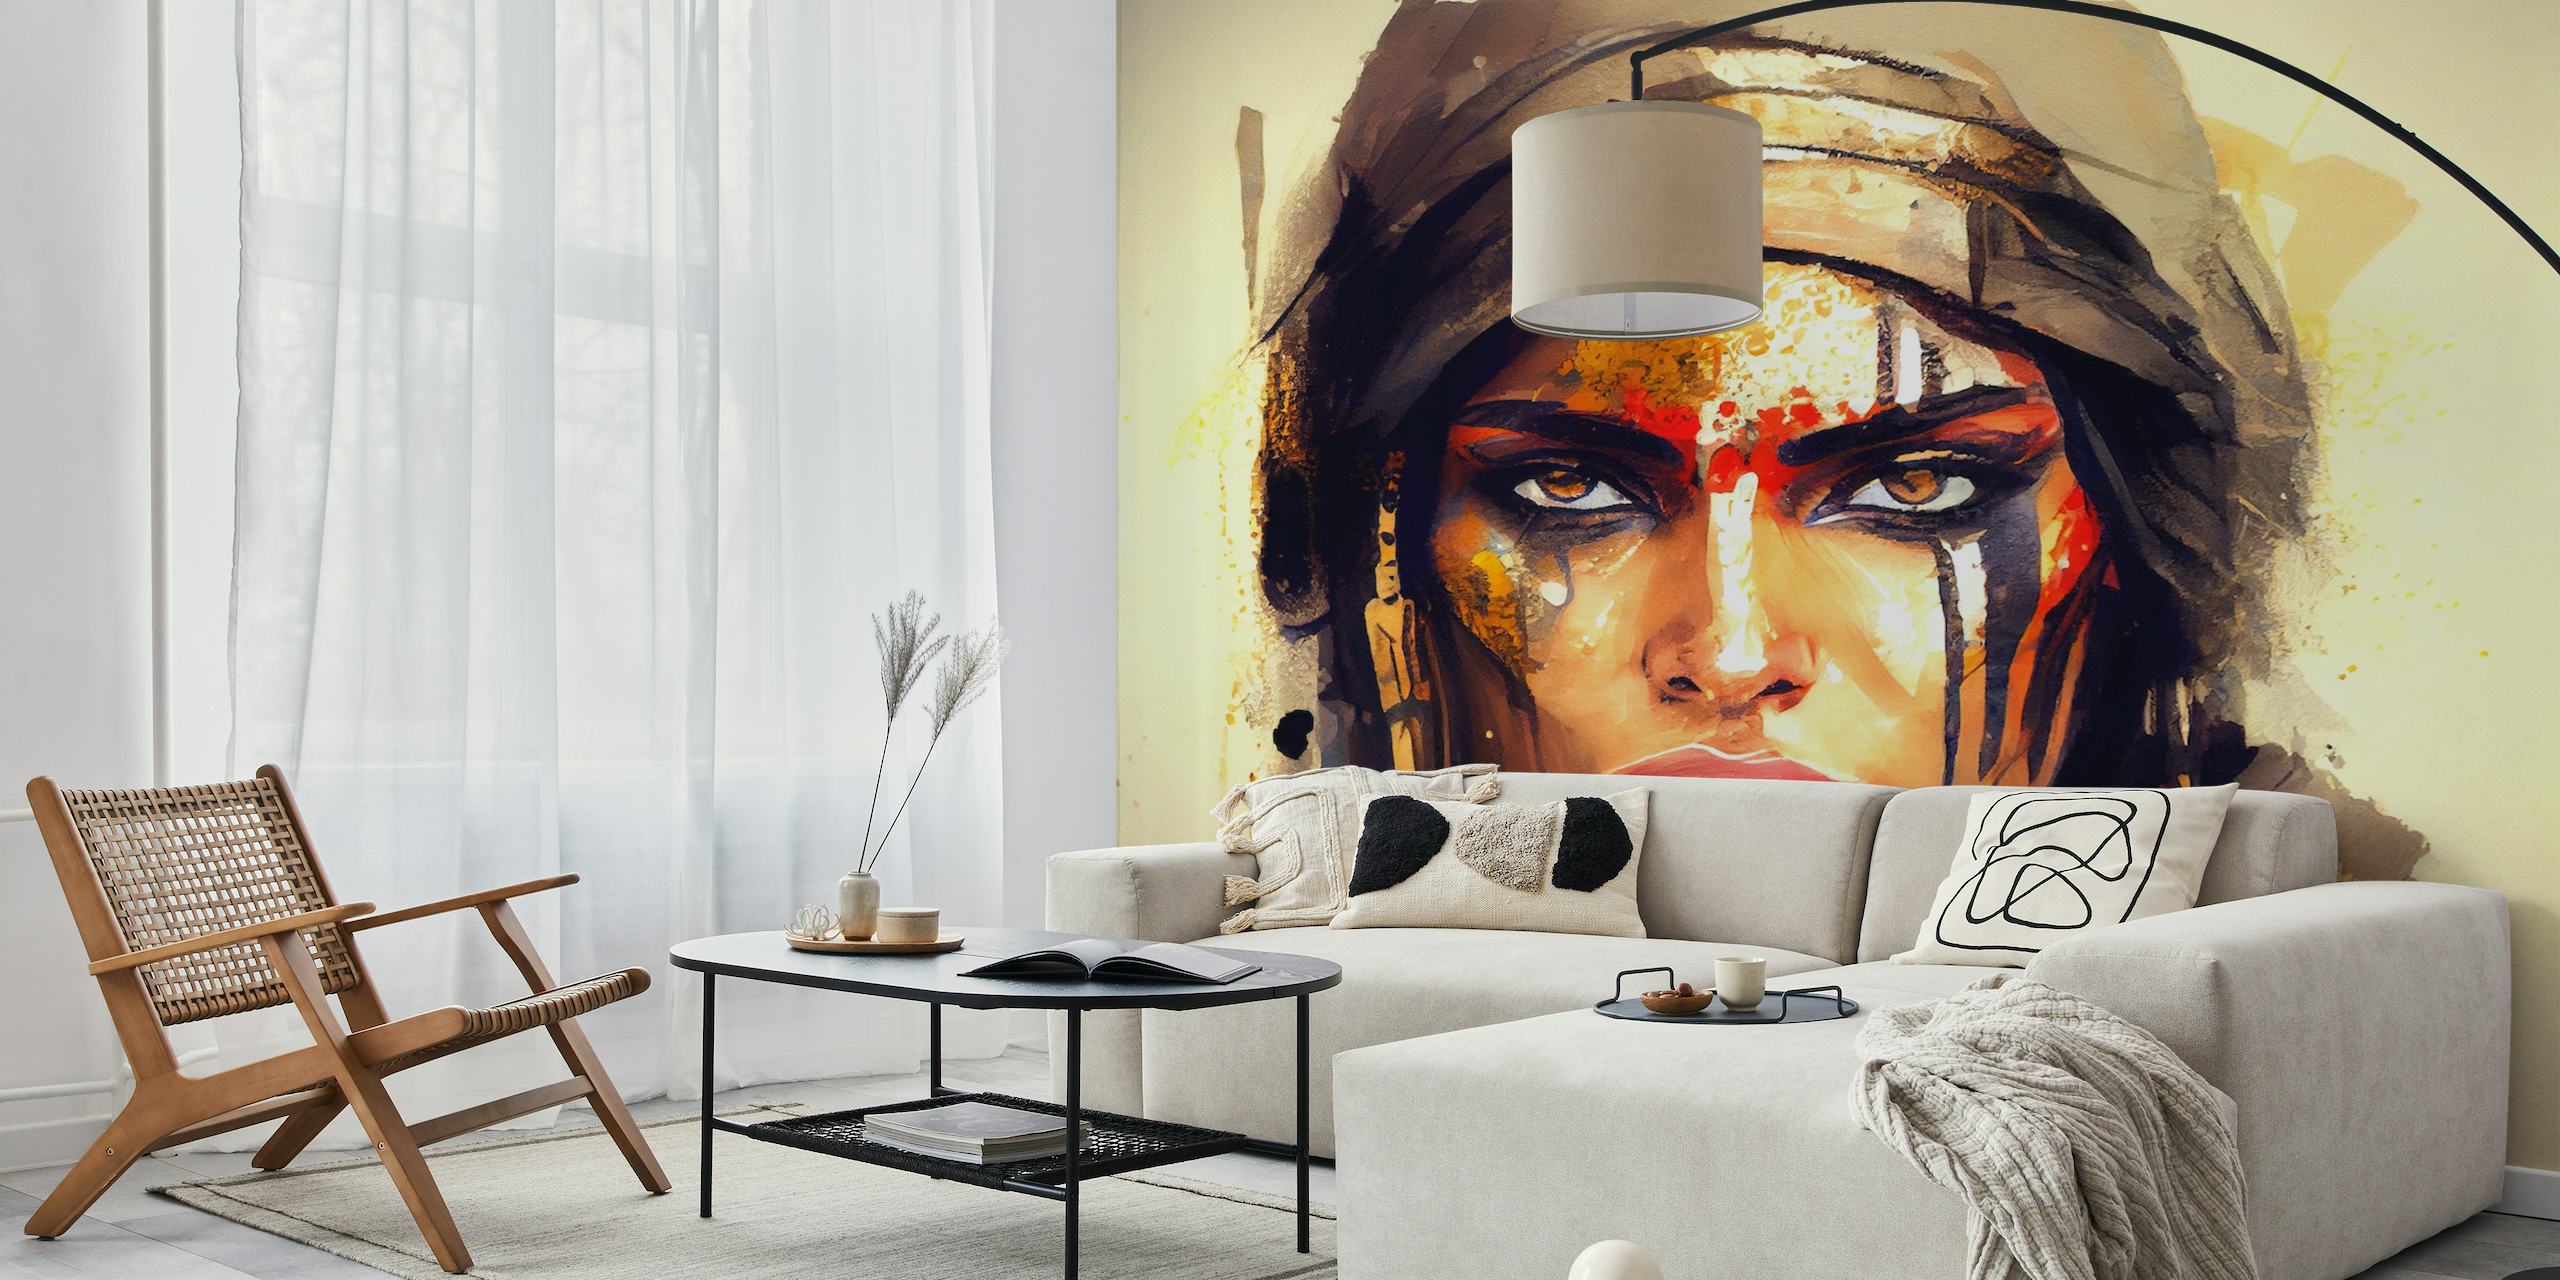 Représentation artistique d’une puissante guerrière égyptienne avec une peinture faciale audacieuse et une expression déterminée.